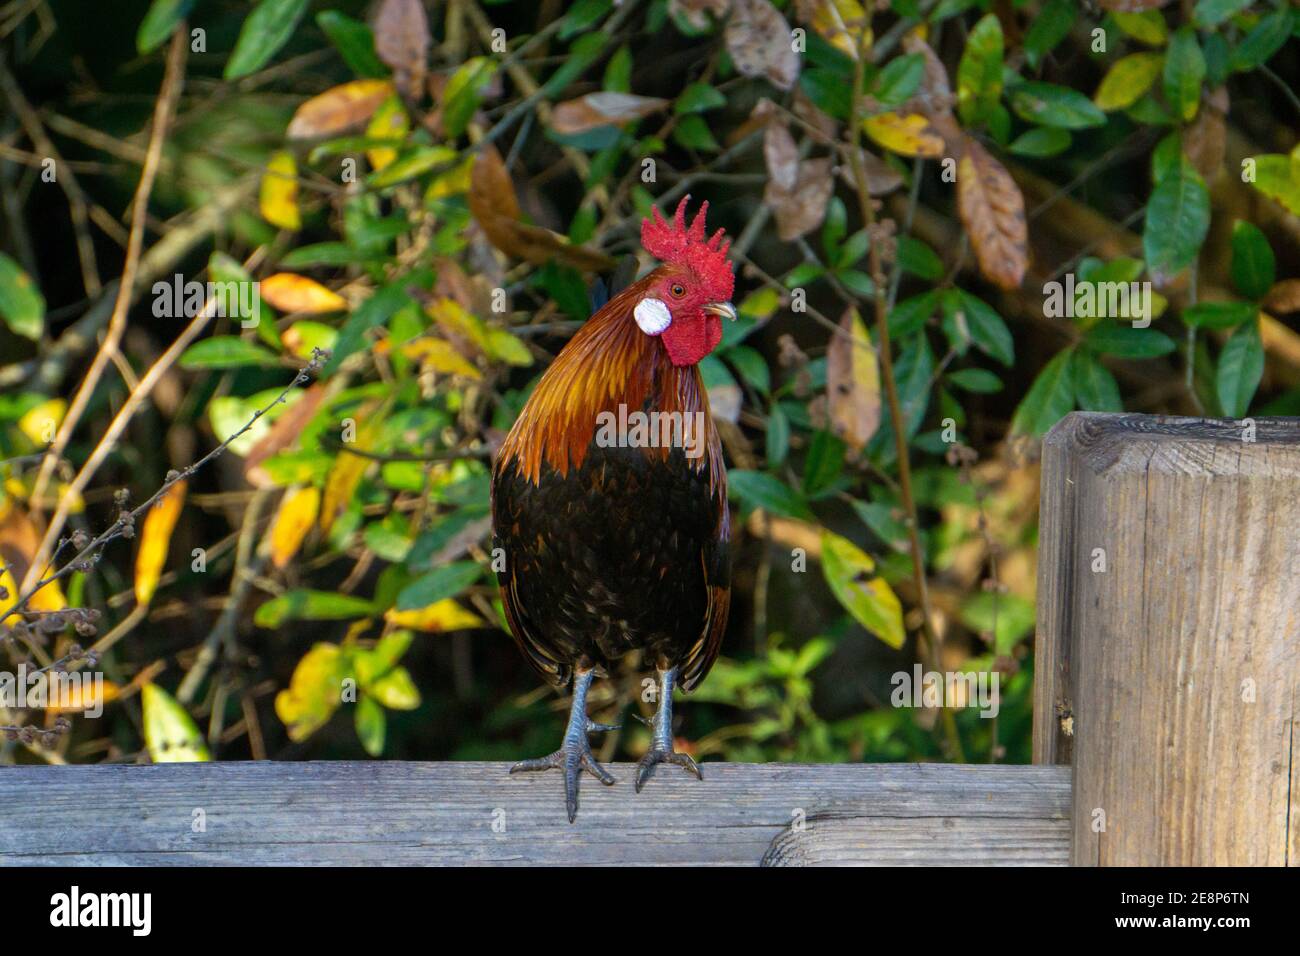 Männlicher Roter Junglefowl (Gallus gallus, Hähnchenvater) Hahn, der auf einem Zaunpfosten steht, Steven J. Fousek Preserve, St. Lucie County, Florida Stockfoto